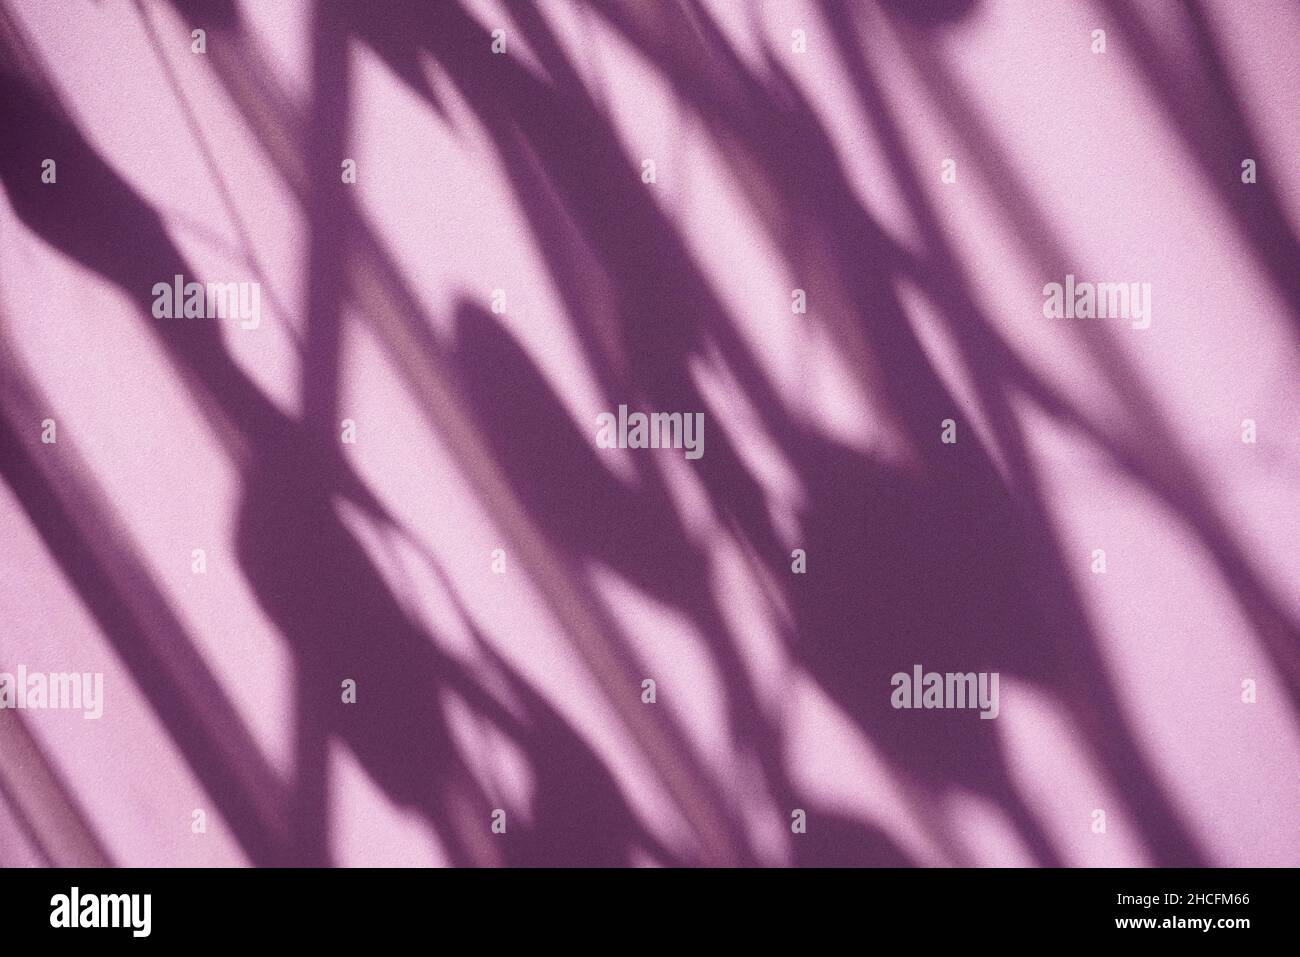 Schattenüberlagerung, Hintergrund. Fenster und Pflanzen hinterlassen Texturschatten auf Lila. Für Ihren Hintergrund, Produktanzeige, Overlays, Präsentation oder Mockup. Stockfoto